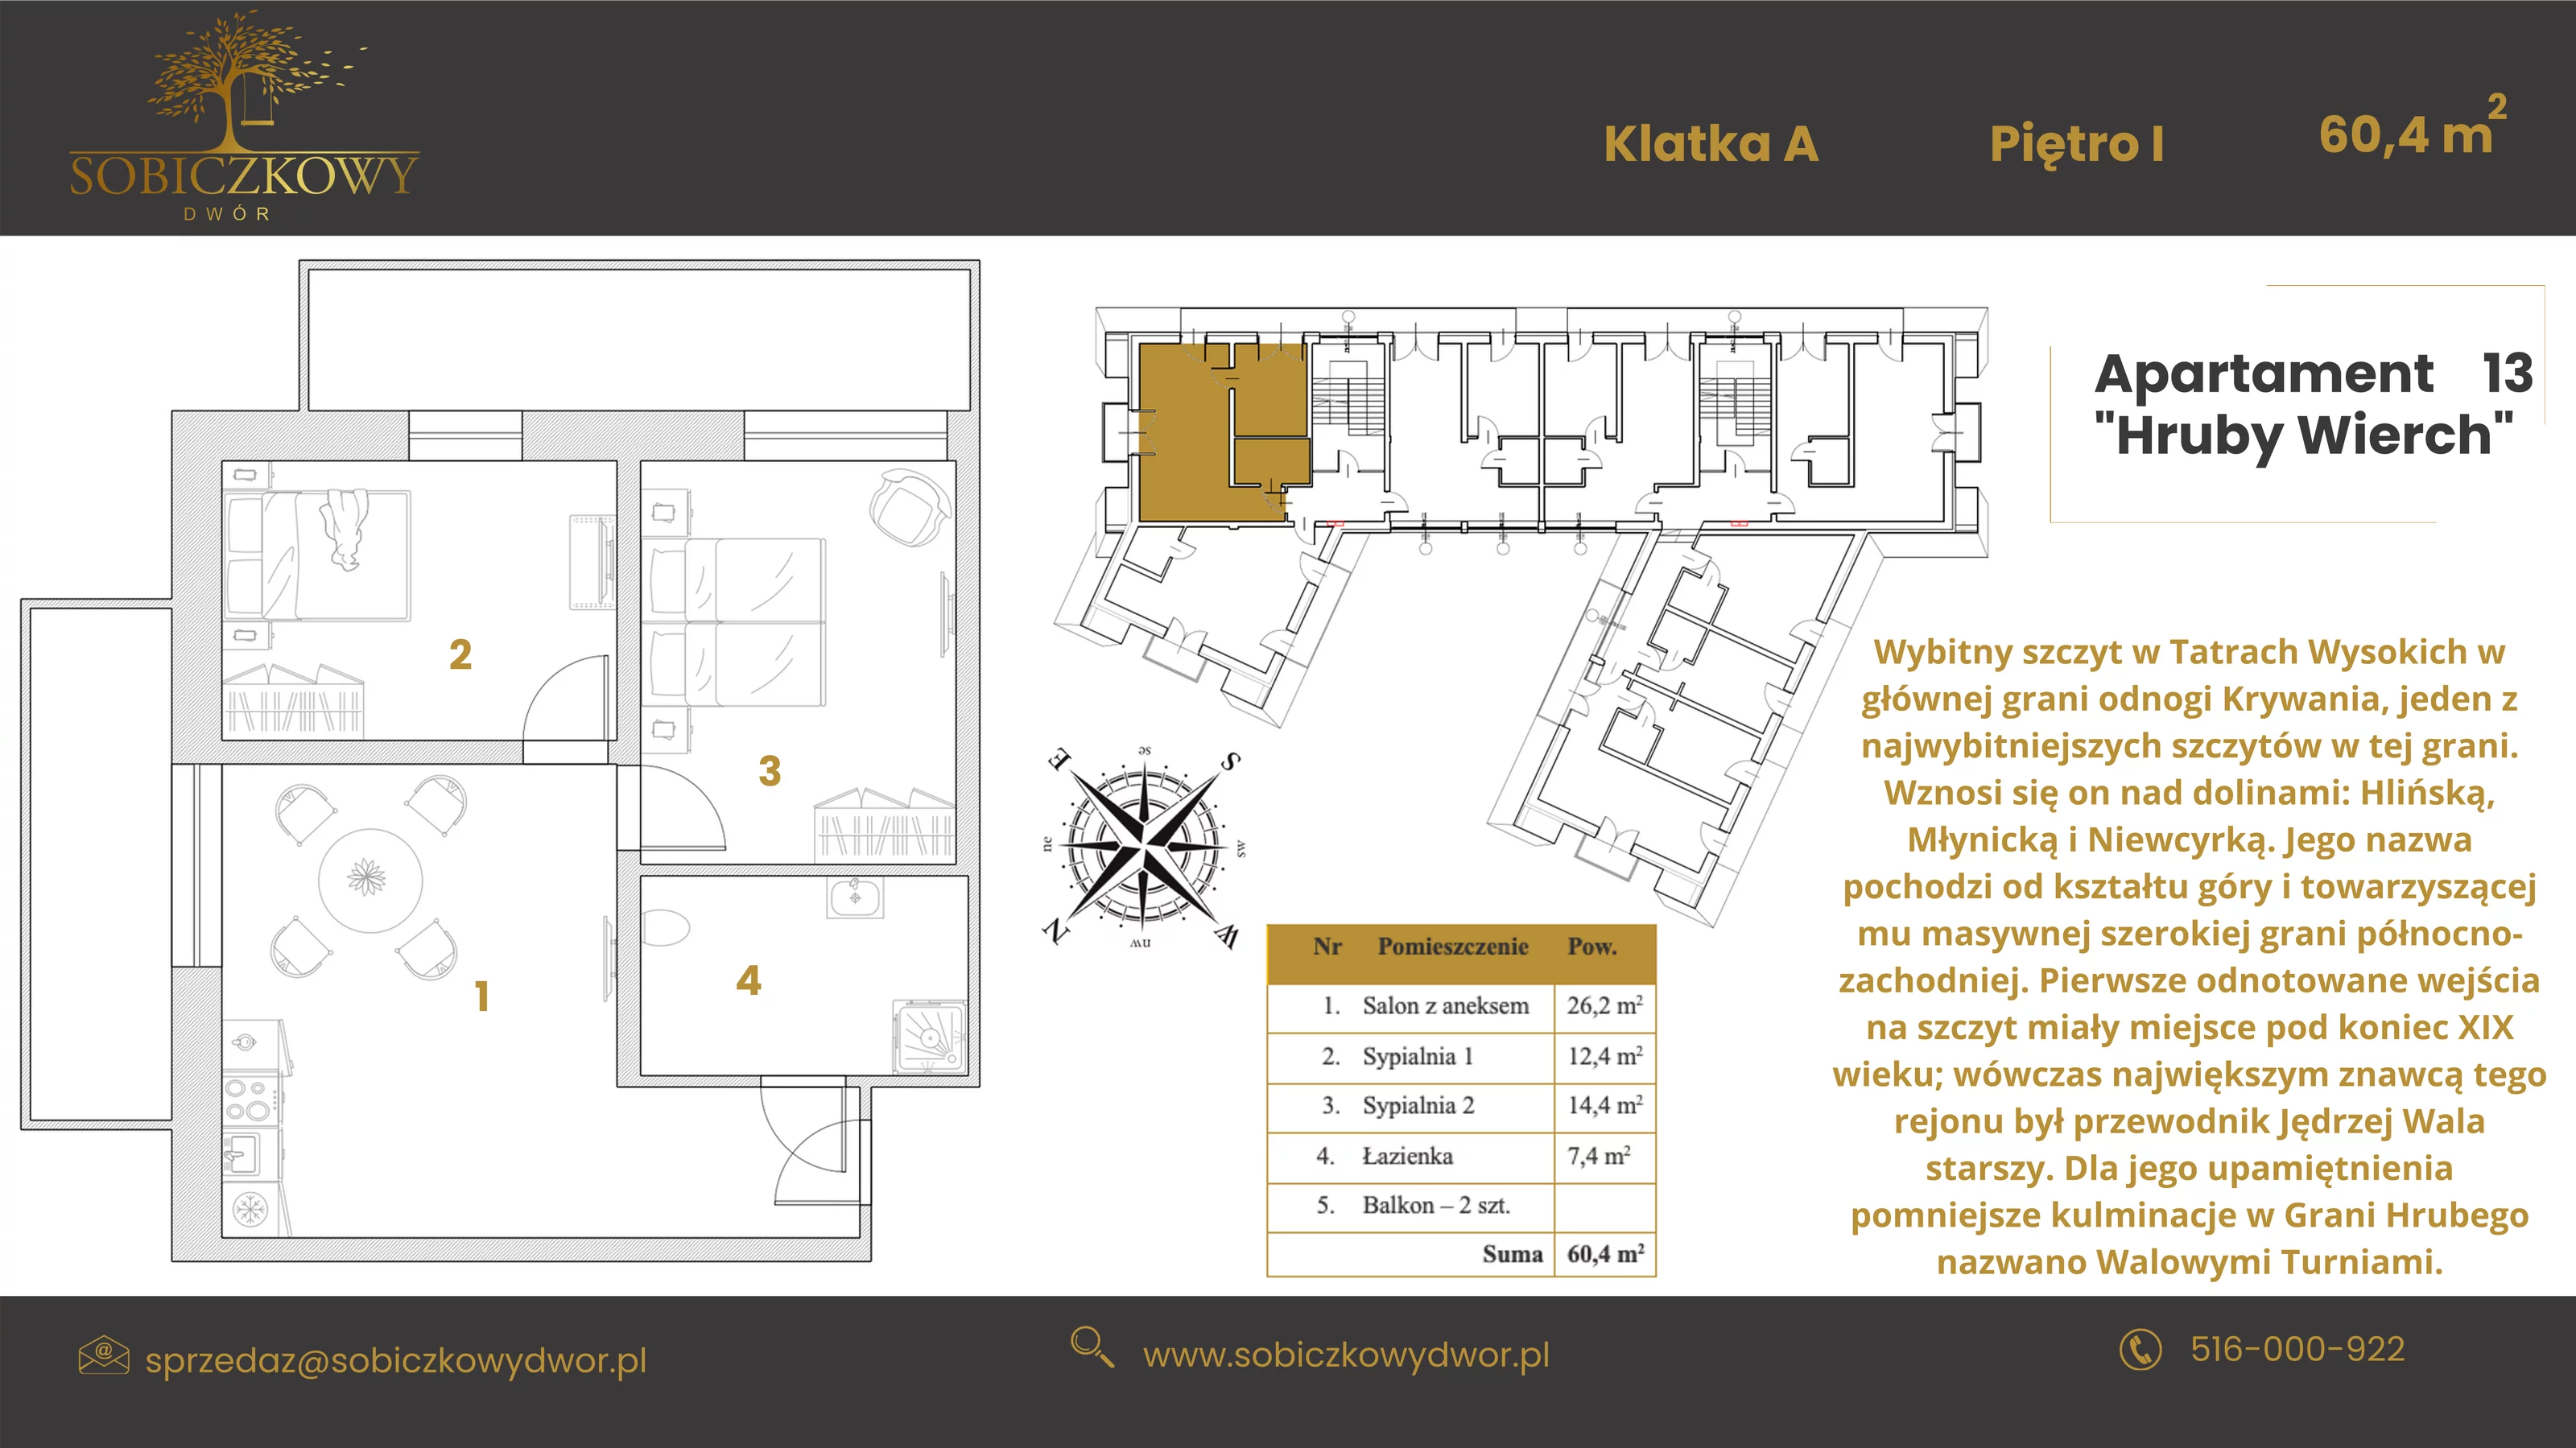 Apartament 60,40 m², piętro 1, oferta nr 13 "Hruby Wierch", Sobiczkowy Dwór, Kościelisko, ul. Sobiczkowa Bór 1